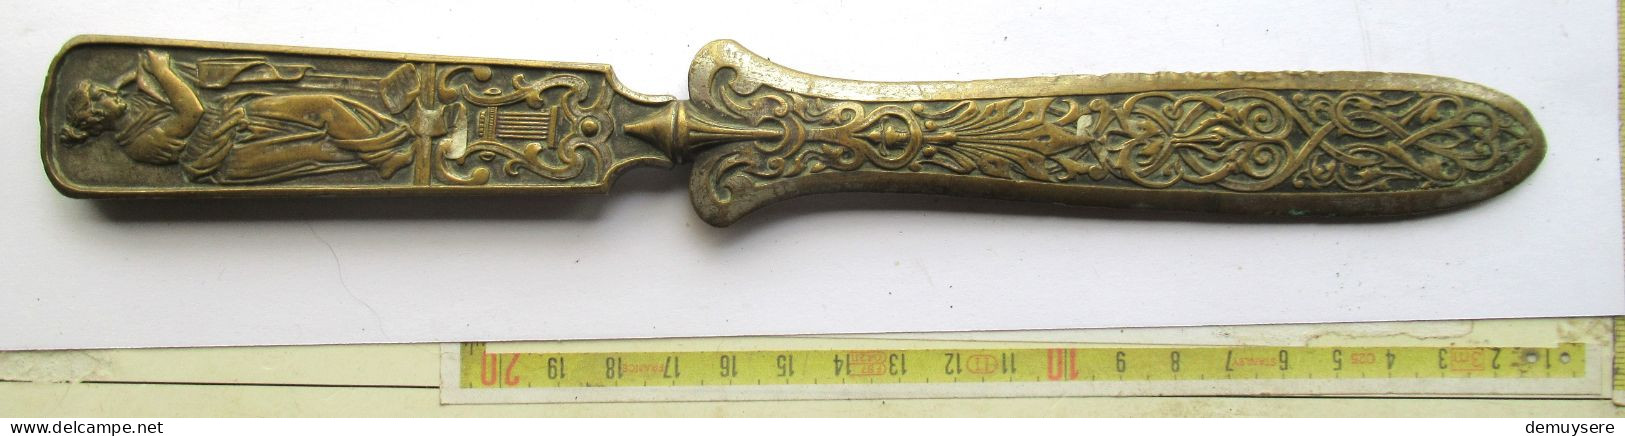 Lade 24  - Bronzen Of Koperen Brievenopener - Ouvre-lettre En Bronze Ou En Cuivre - 183 Gram - Cuivres